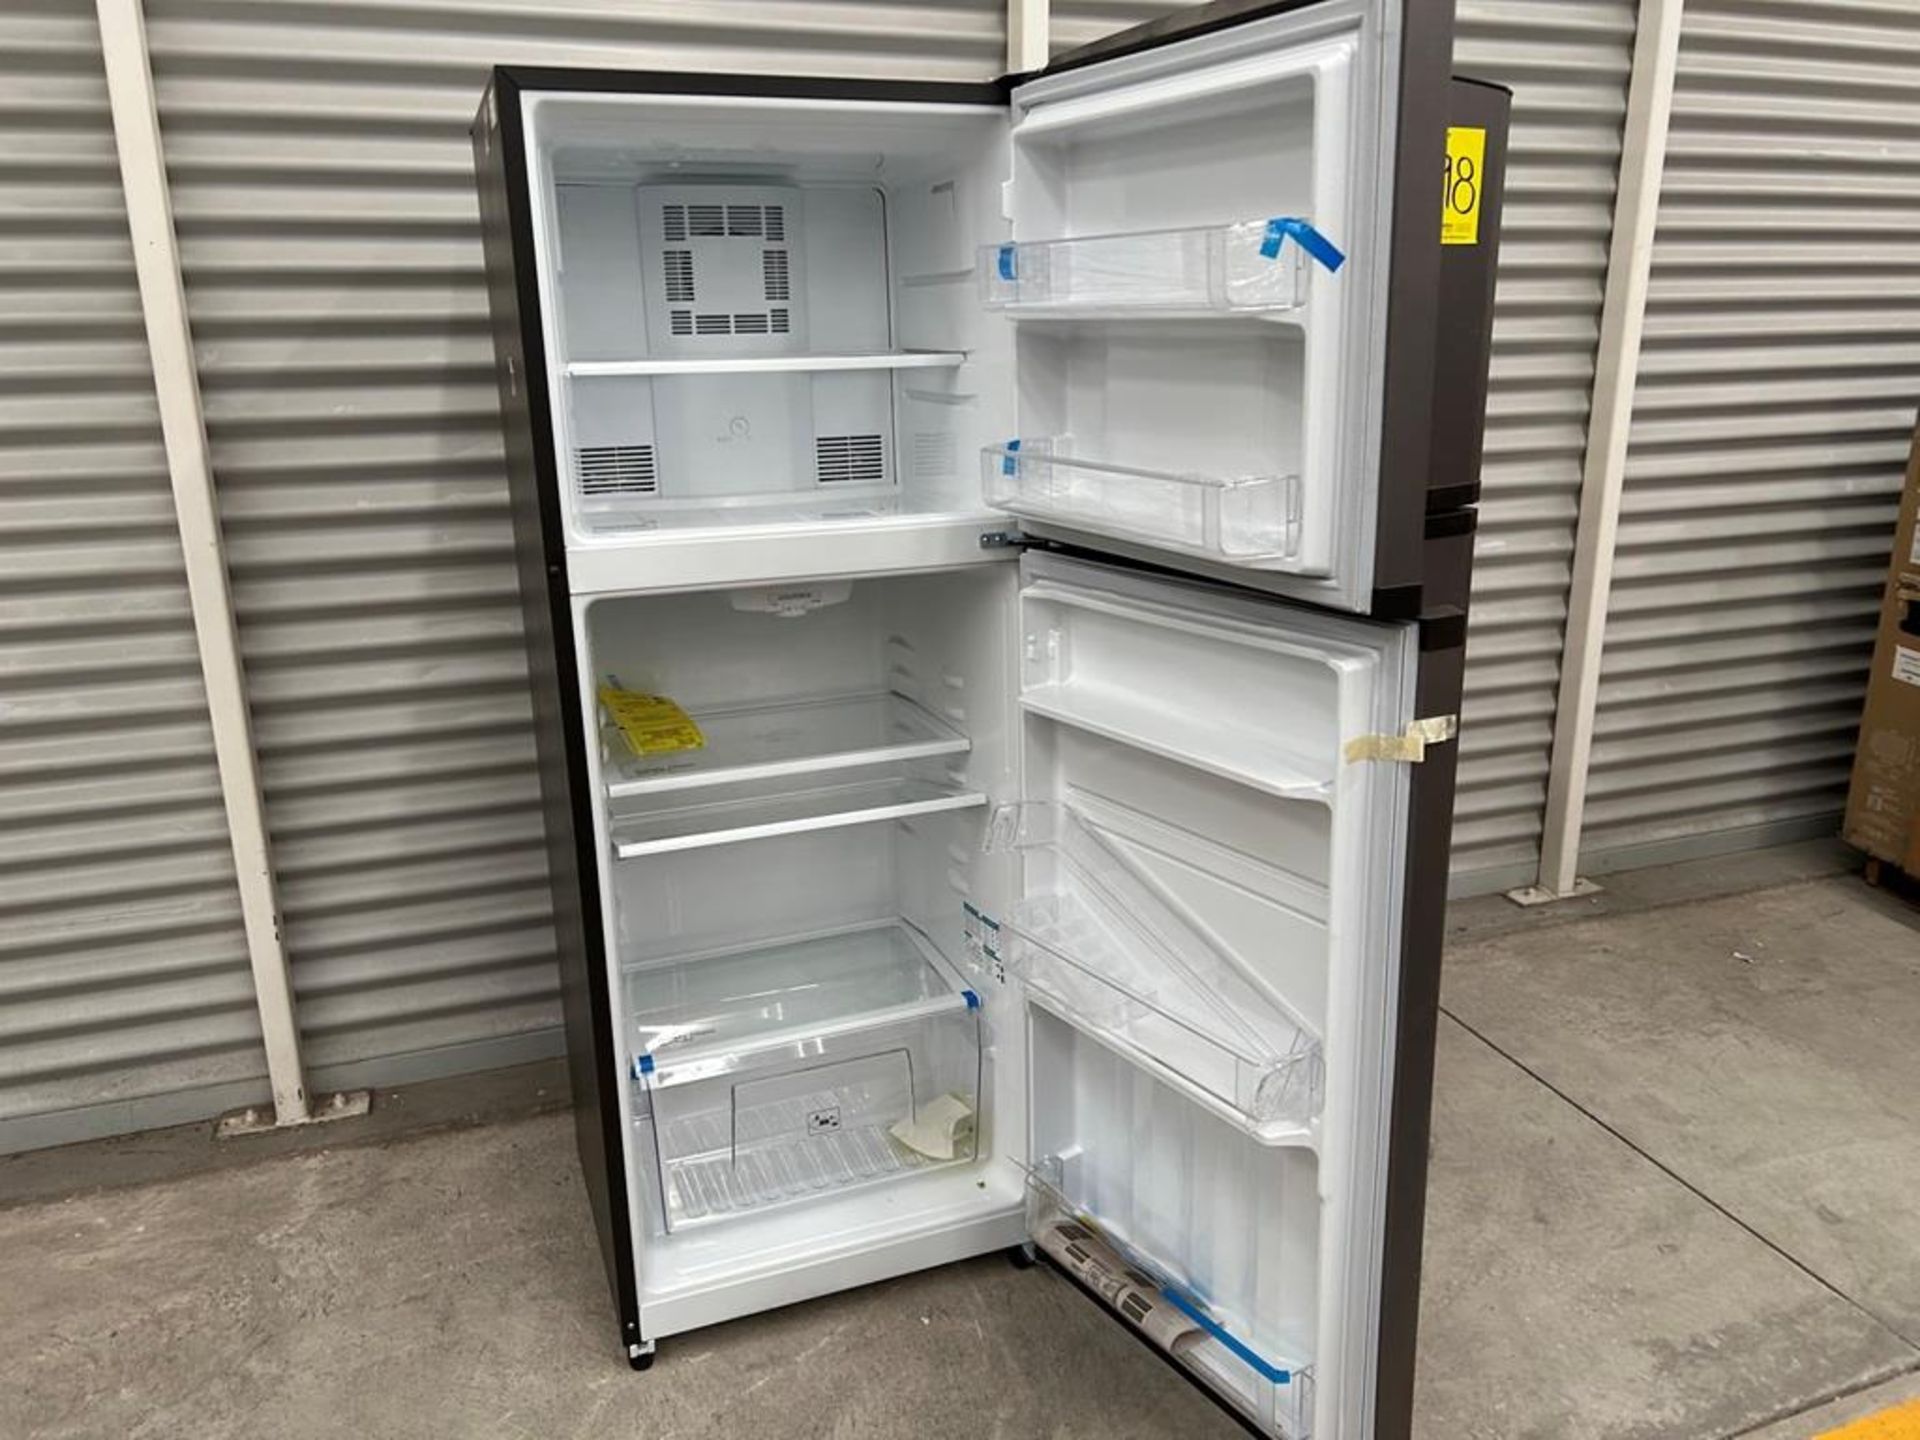 Lote de 2 refrigeradores contiene: 1 Refrigerador Marca MABE, Modelo RME360PVMRM0, Serie 04453, Col - Image 4 of 16